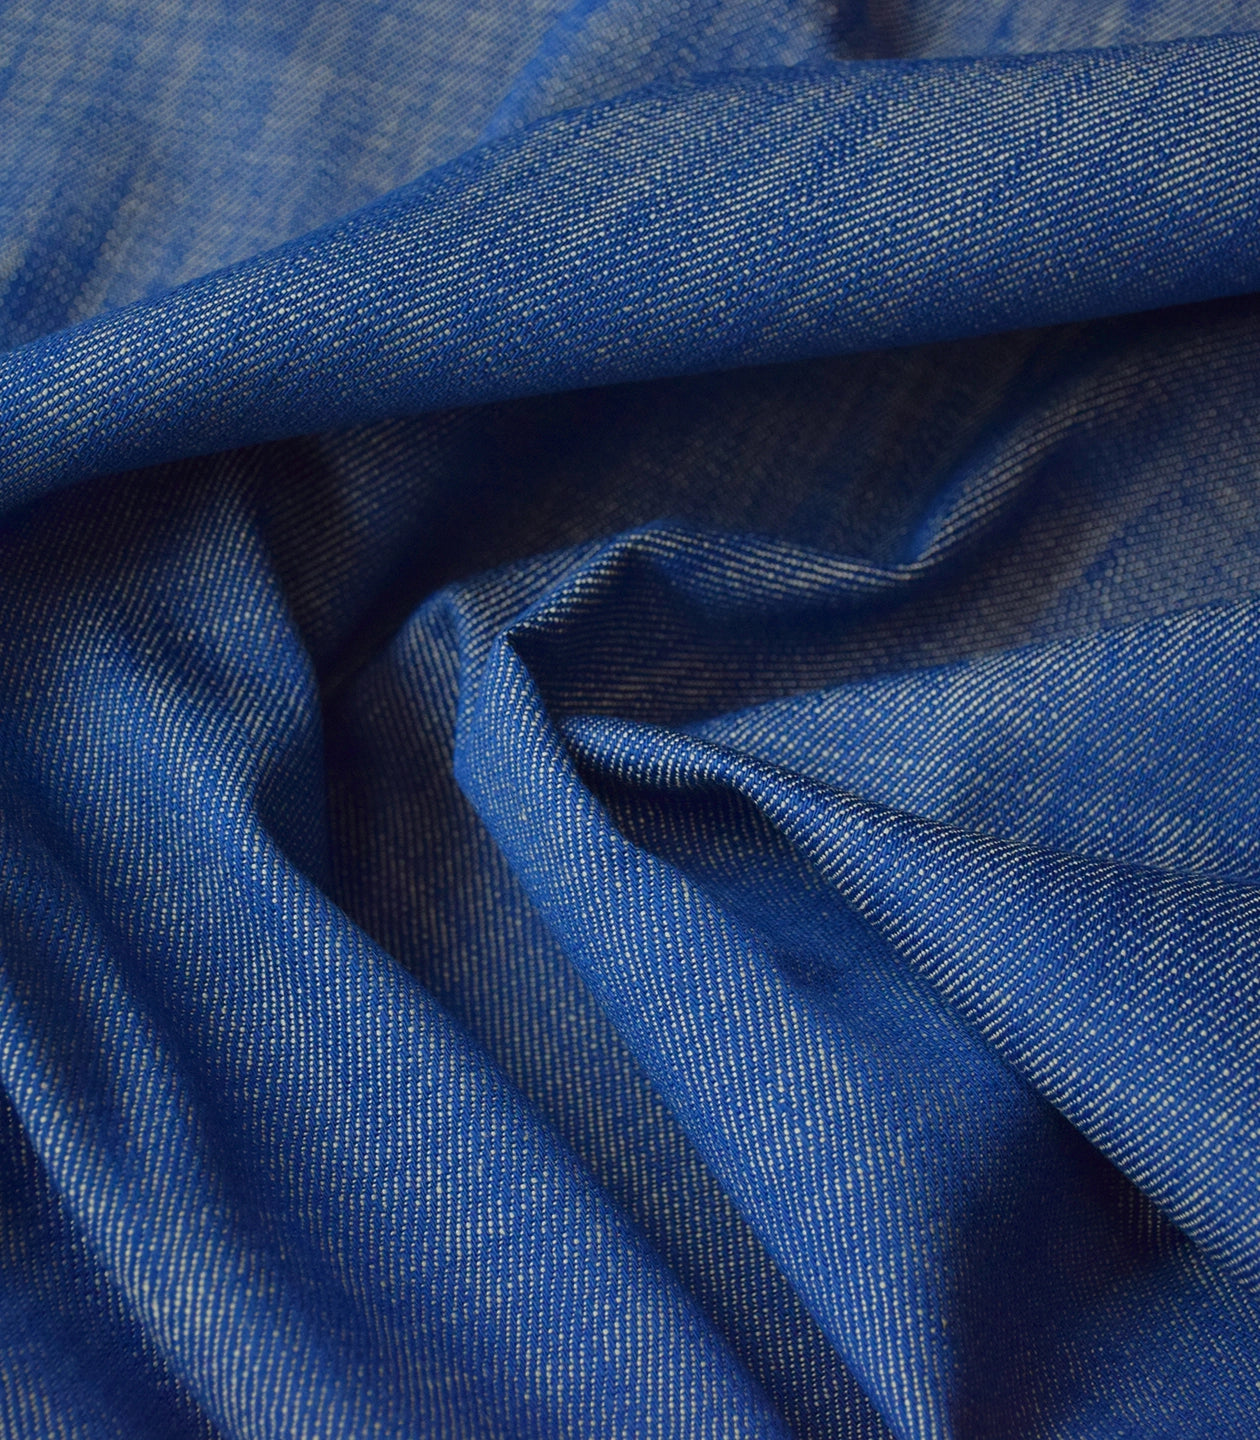 Cousette - Bright Blue 14.1 oz Cotton Denim